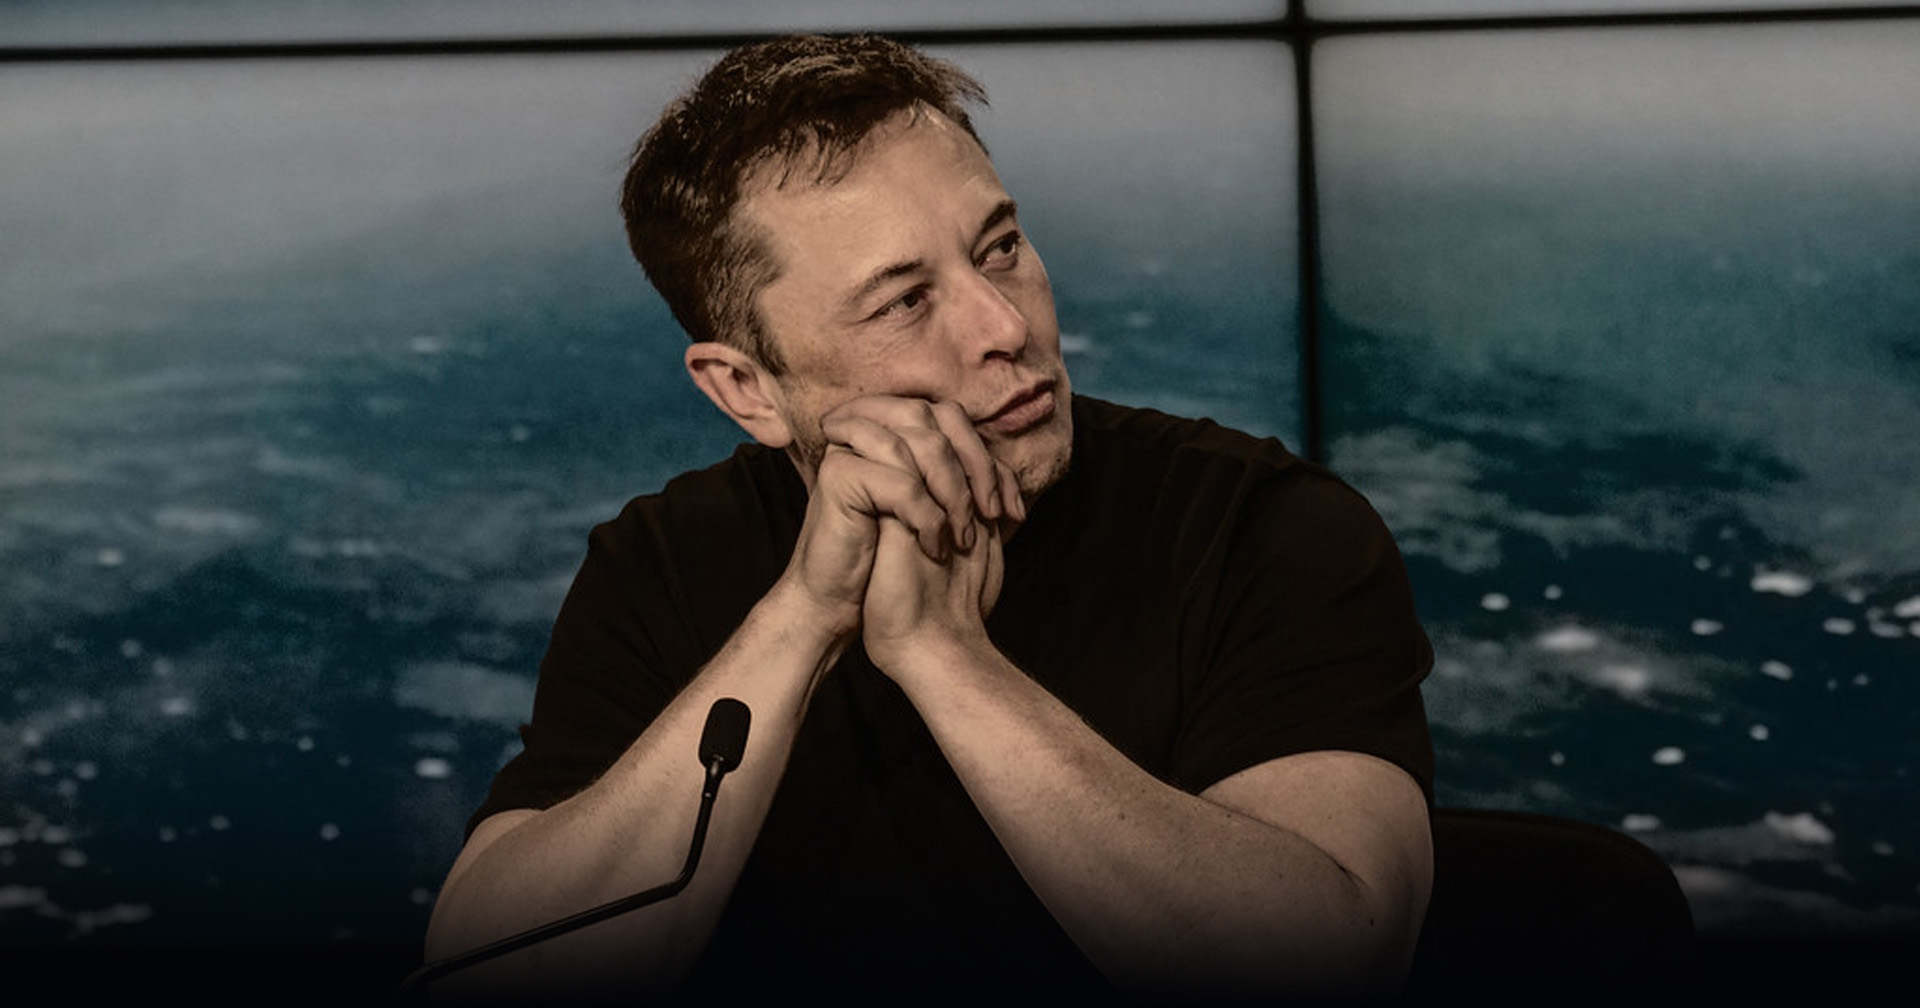 ผู้นำยูเครนตอบโต้ความเห็นของ Elon Musk ที่เสนอให้ยูเครนยอมยกดินแดนแลกการยุติสงคราม